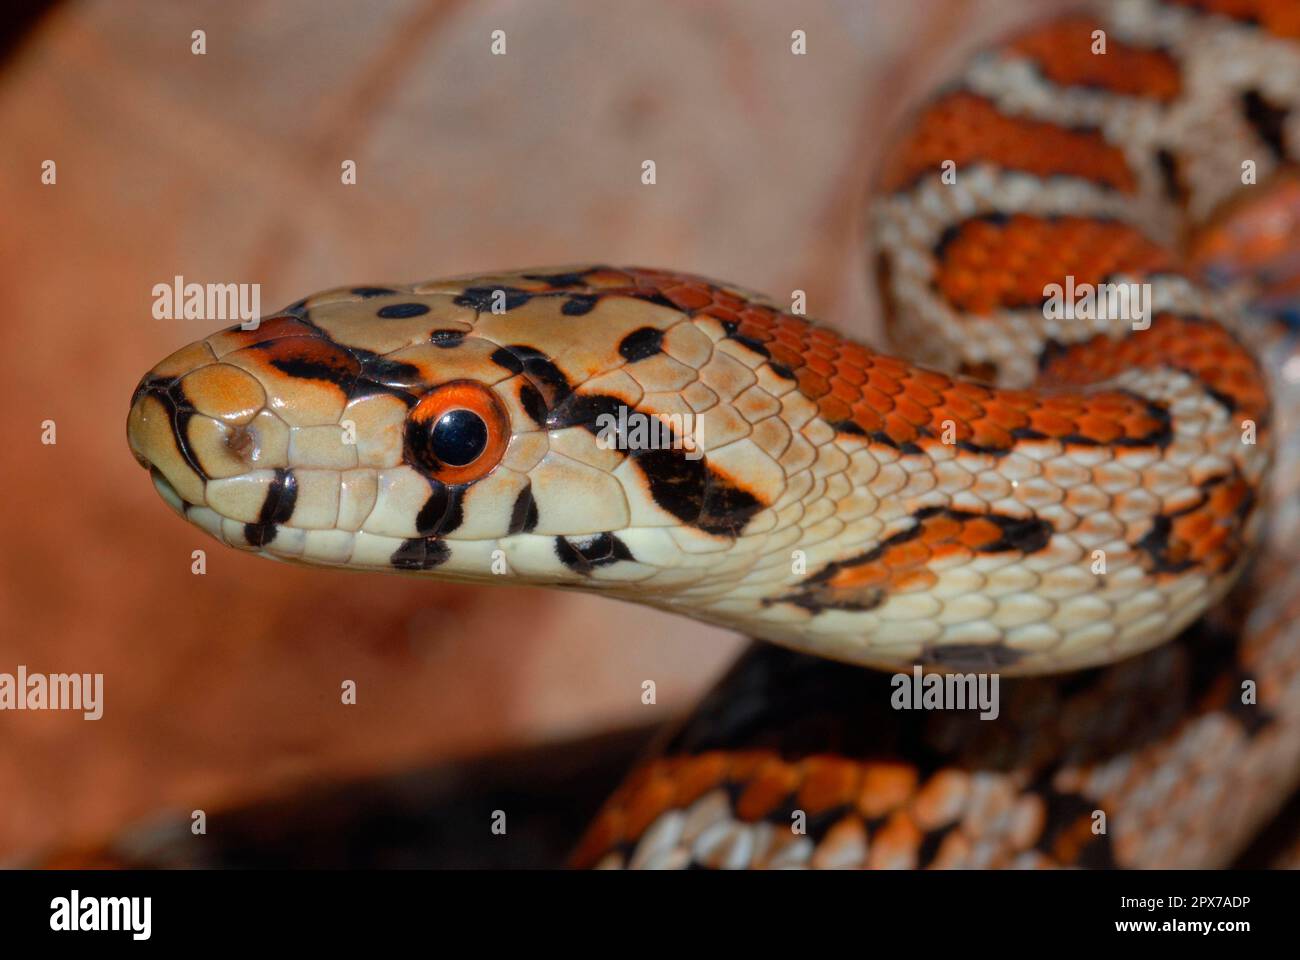 Leopard snake Stock Photo